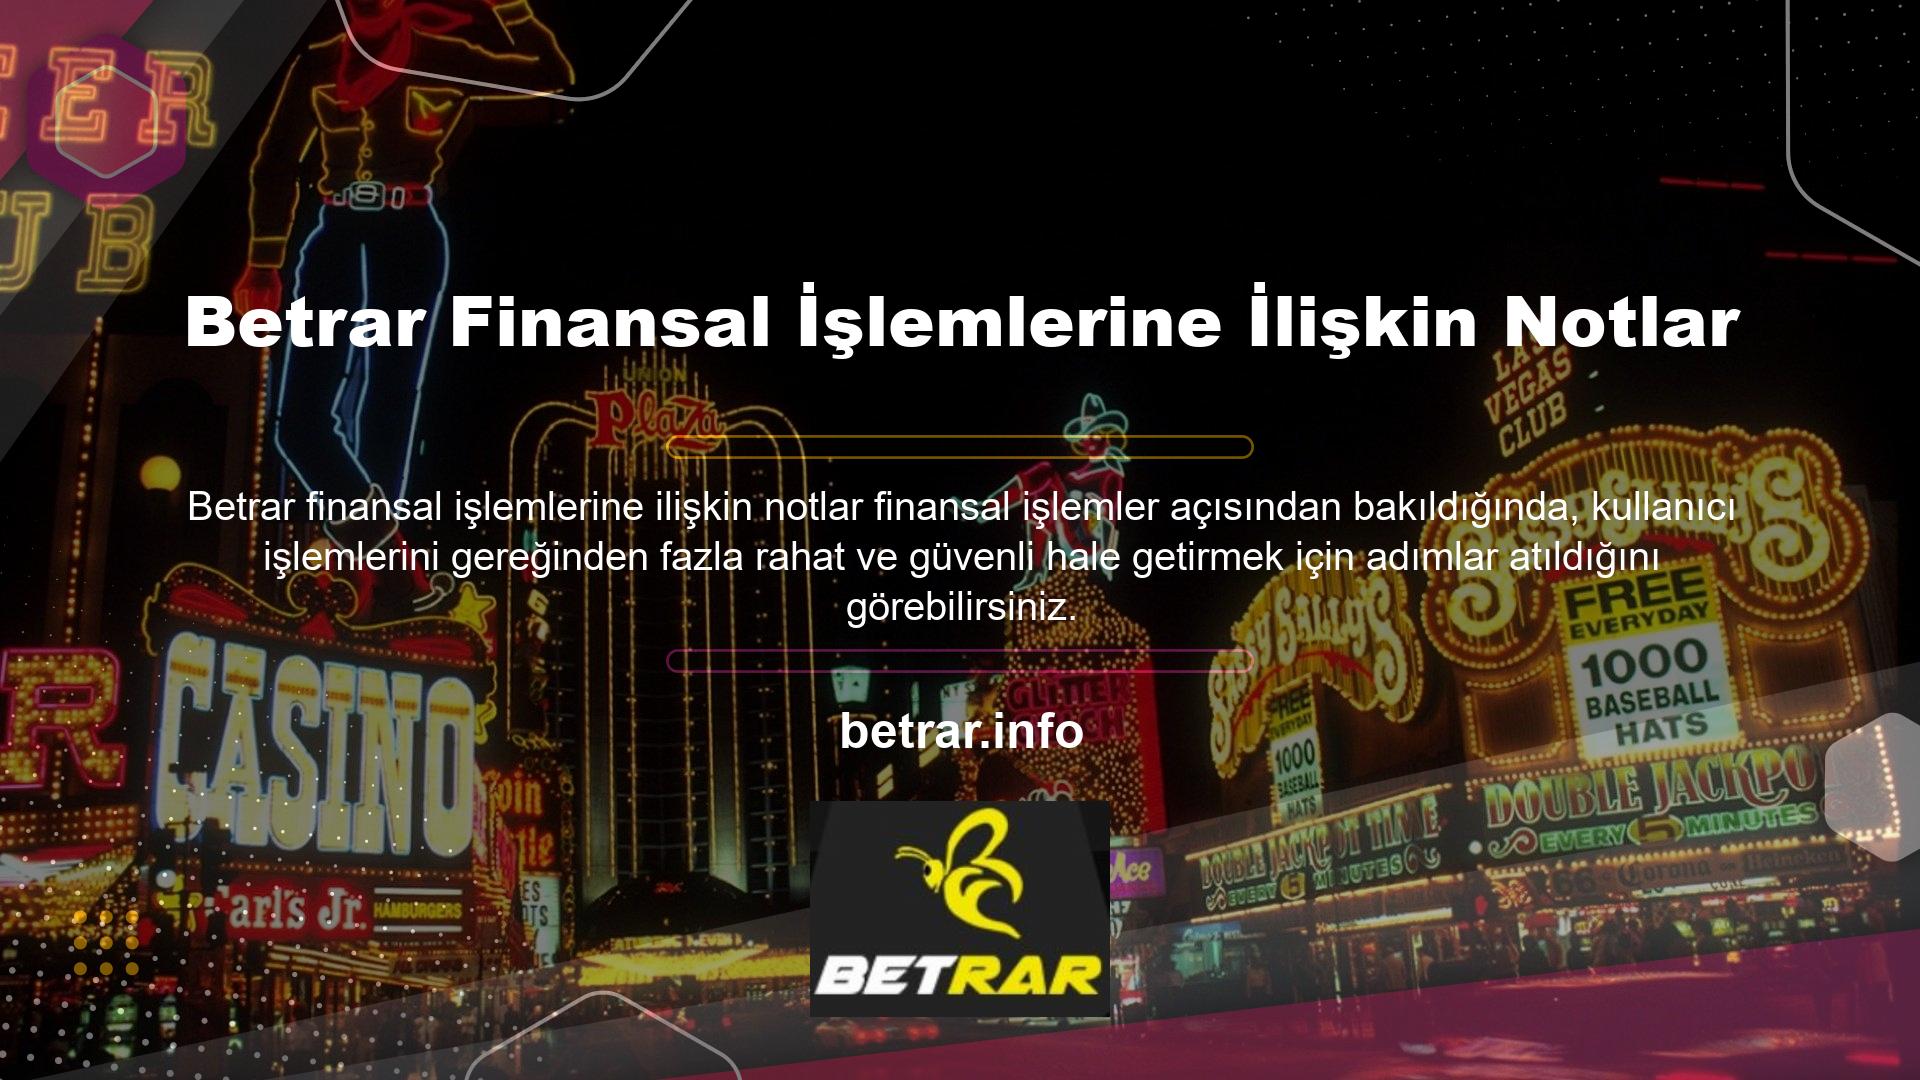 Betrar, bilgi ve dosyalarınızın bilgisayar sisteminizde comodo SSL şifreleme programı ile korunduğu güvenilir offshore casino sitelerinden biridir